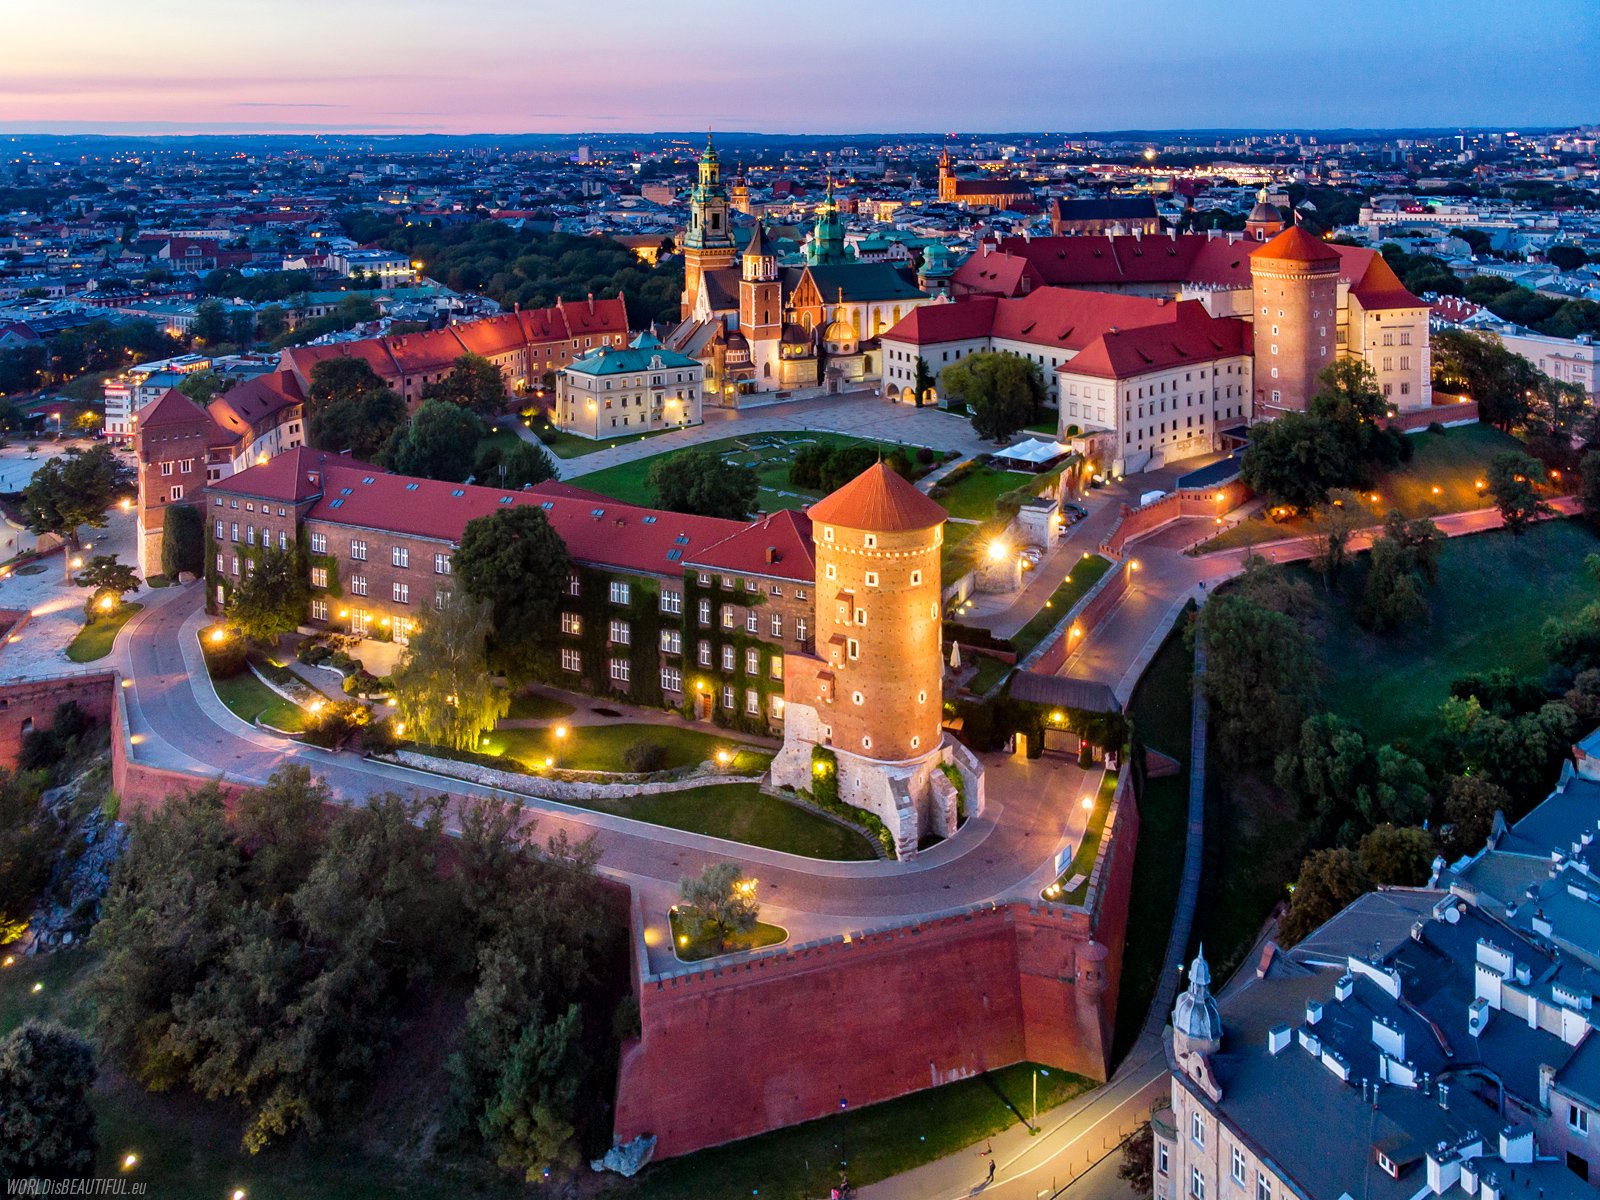 Zamek w Krakowie